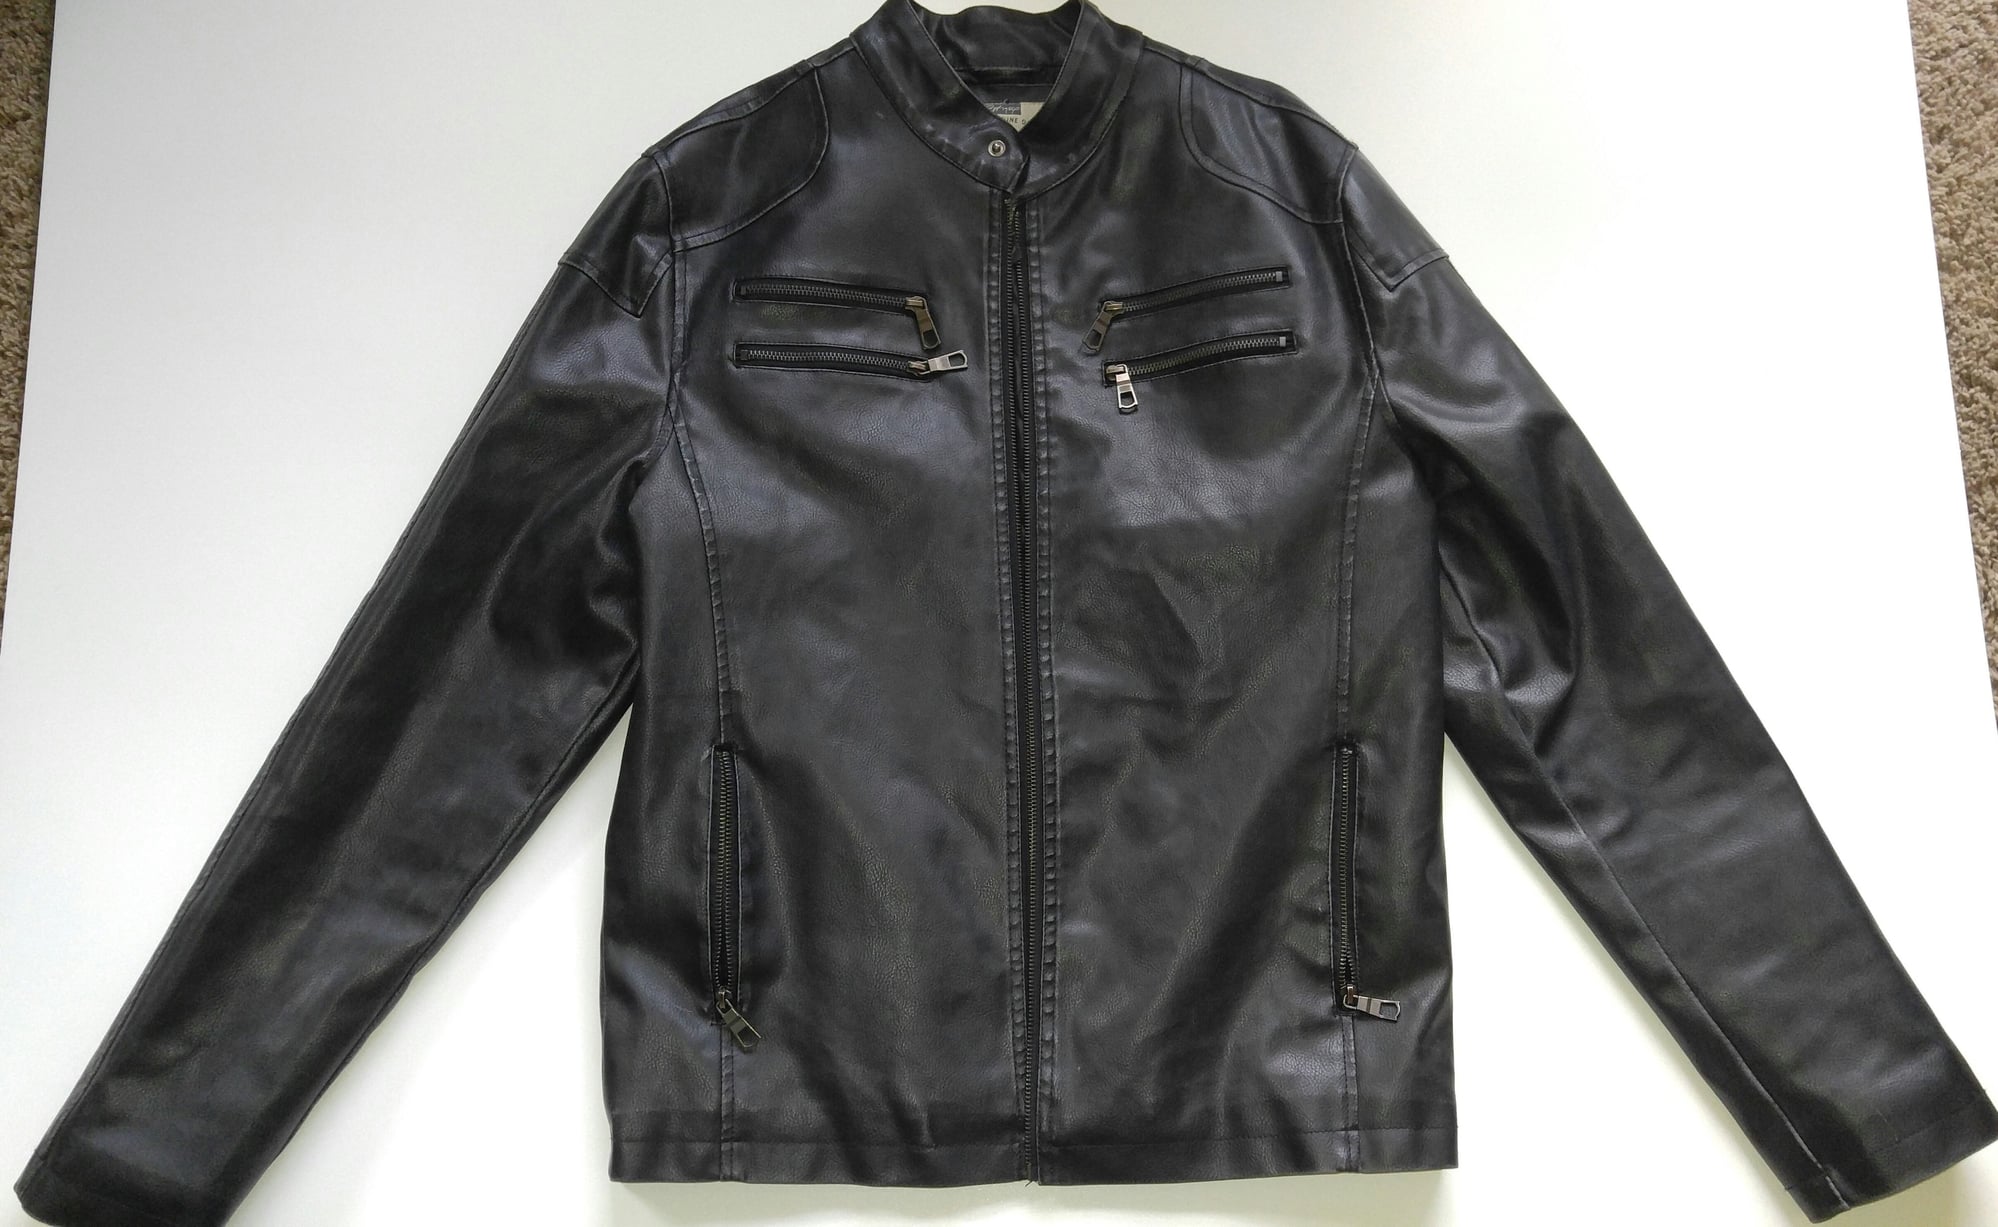 Lightweight Leather Jacket - Harley Davidson Forums